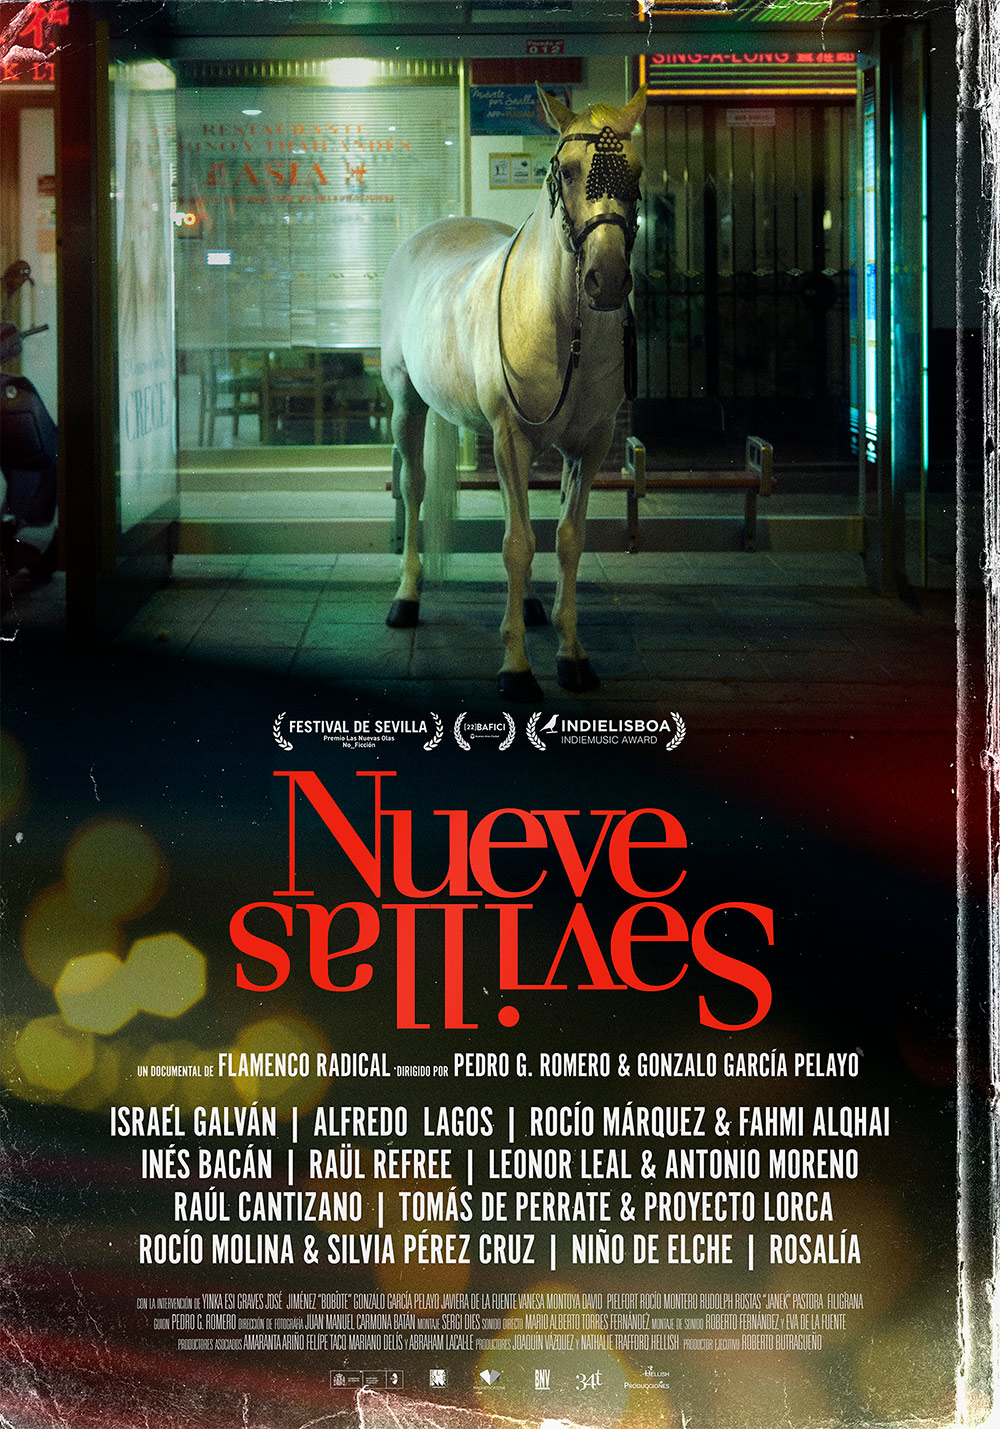 “Nueve Sevillas”, de Gonzalo García Pelayo y Pedro G. Romero se estrena en cines el 19 de noviembre